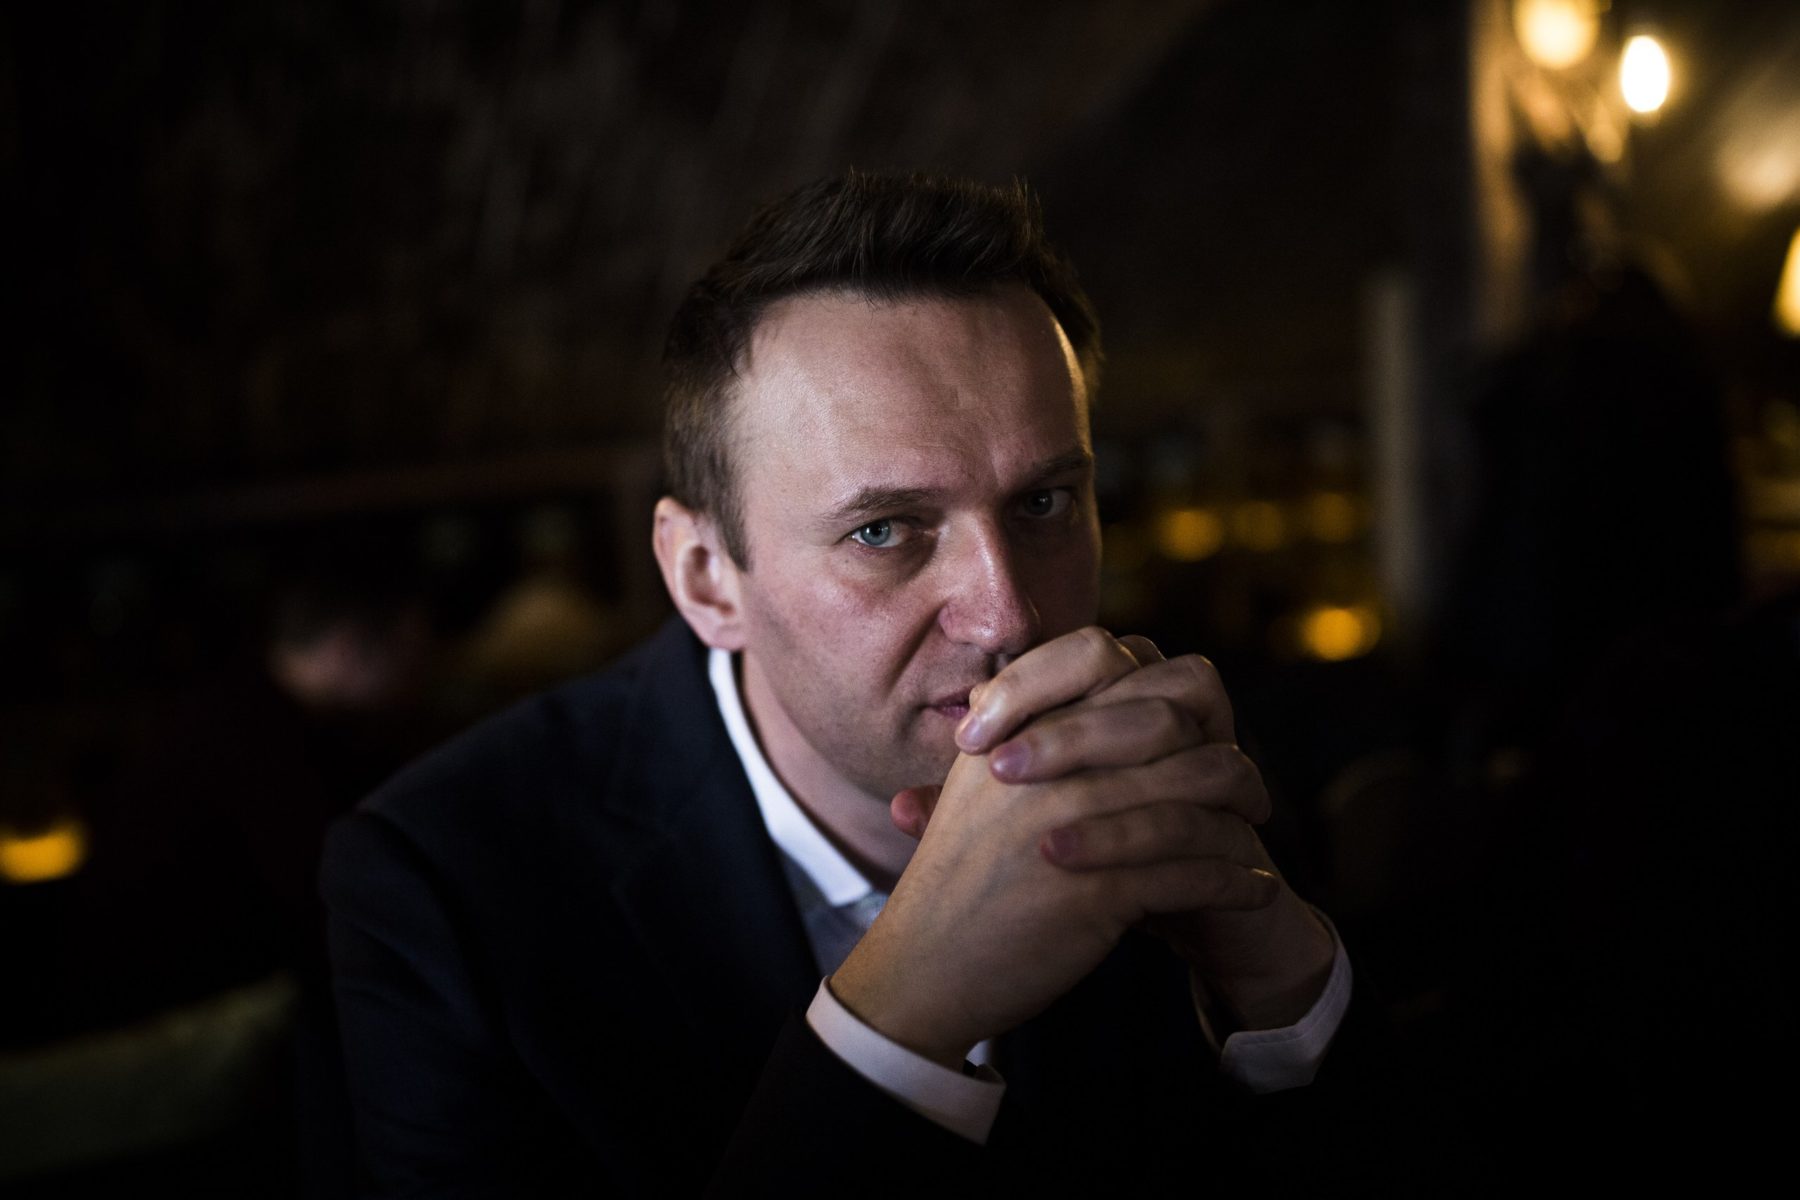 Команда Навального предложила 3 млн руб. за видео из томского отеля, сделанные в день отравления